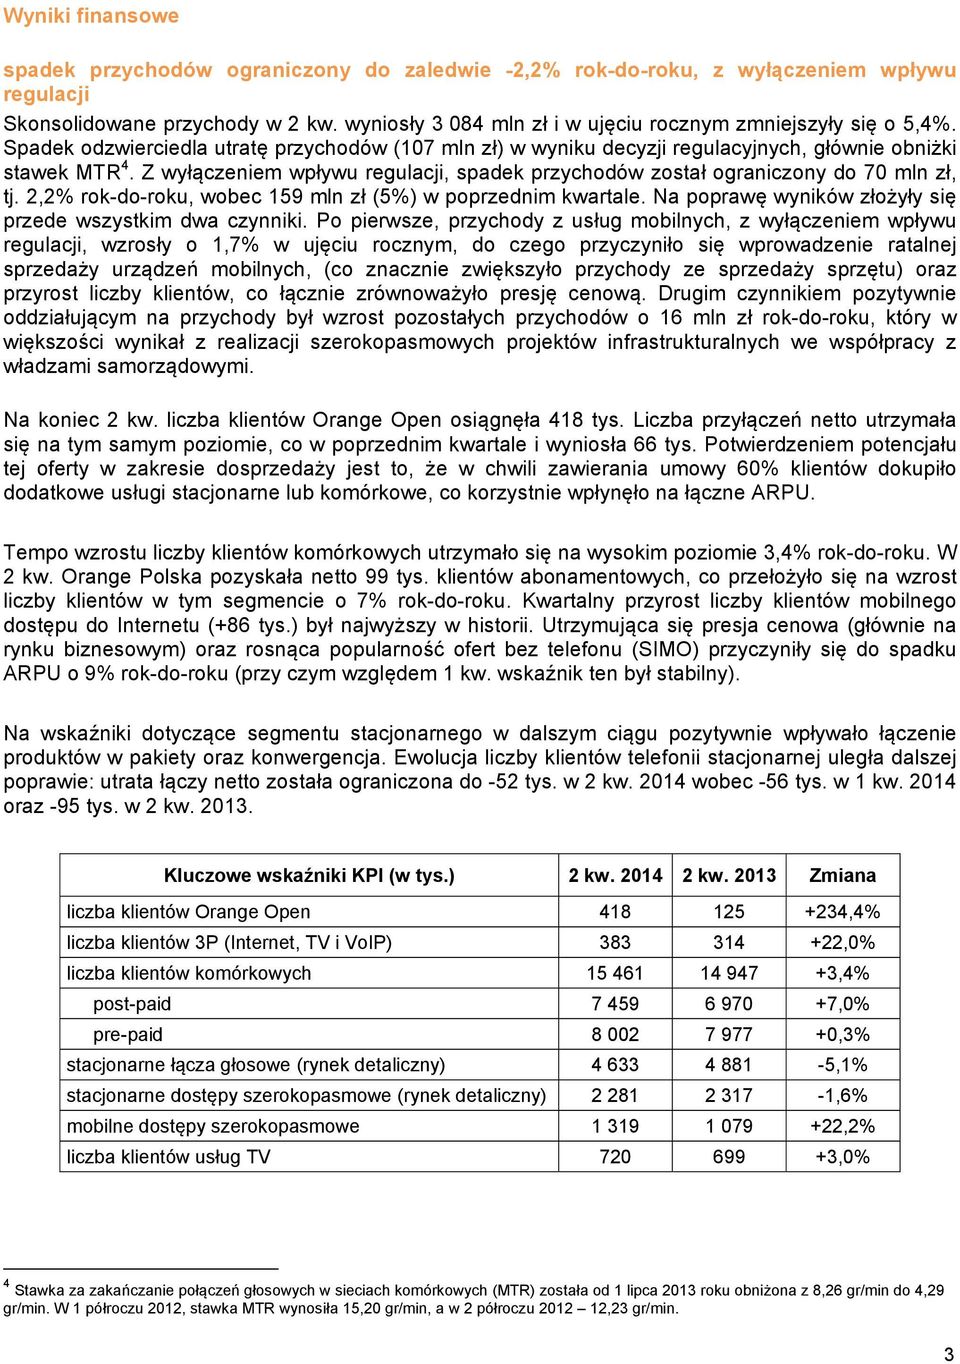 Z wyłączeniem wpływu regulacji, spadek przychodów został ograniczony do 70 mln zł, tj. 2,2% rok-do-roku, wobec 159 mln zł (5%) w poprzednim kwartale.